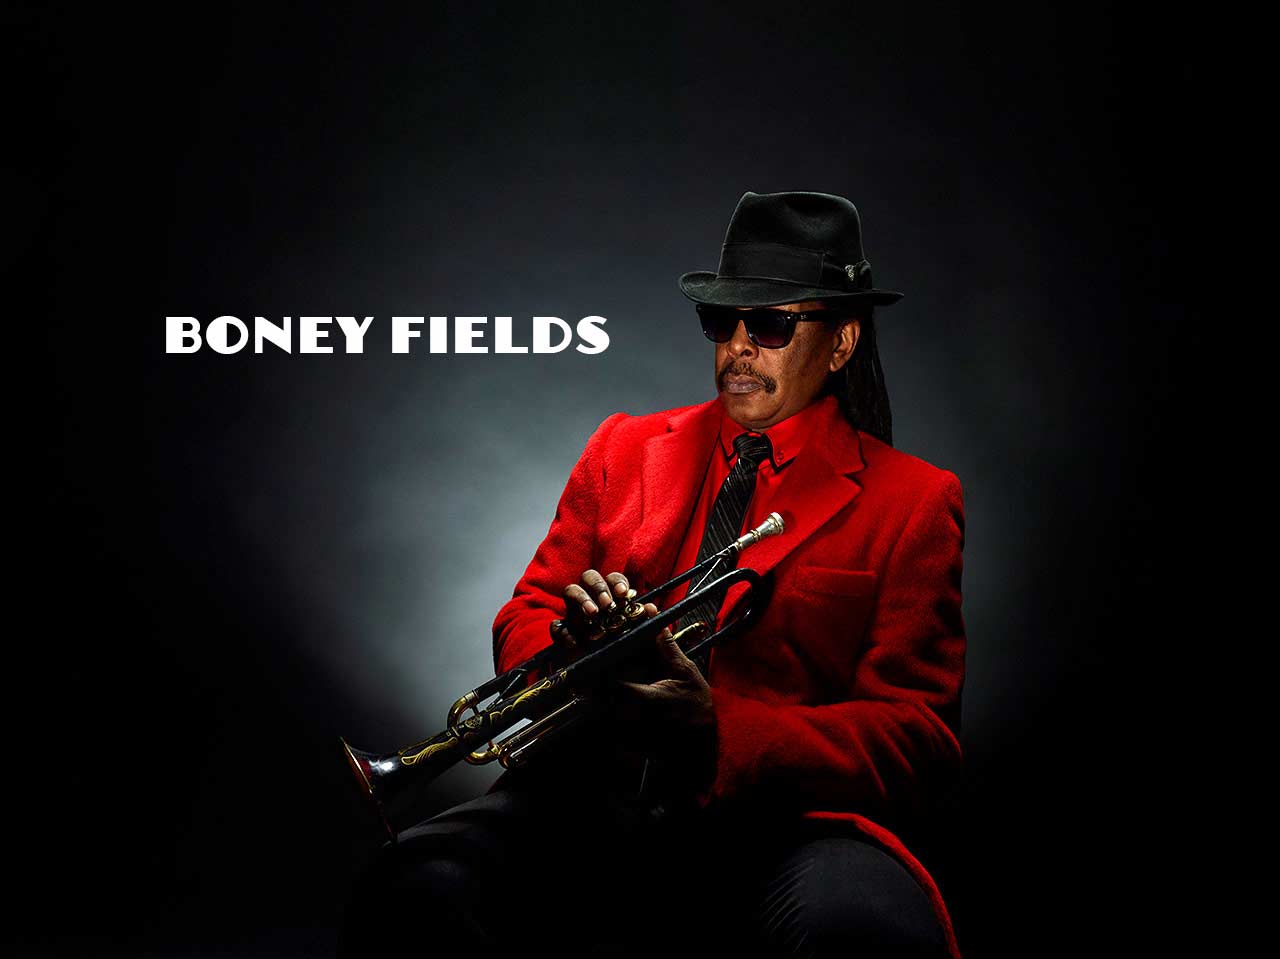 Boney Fields